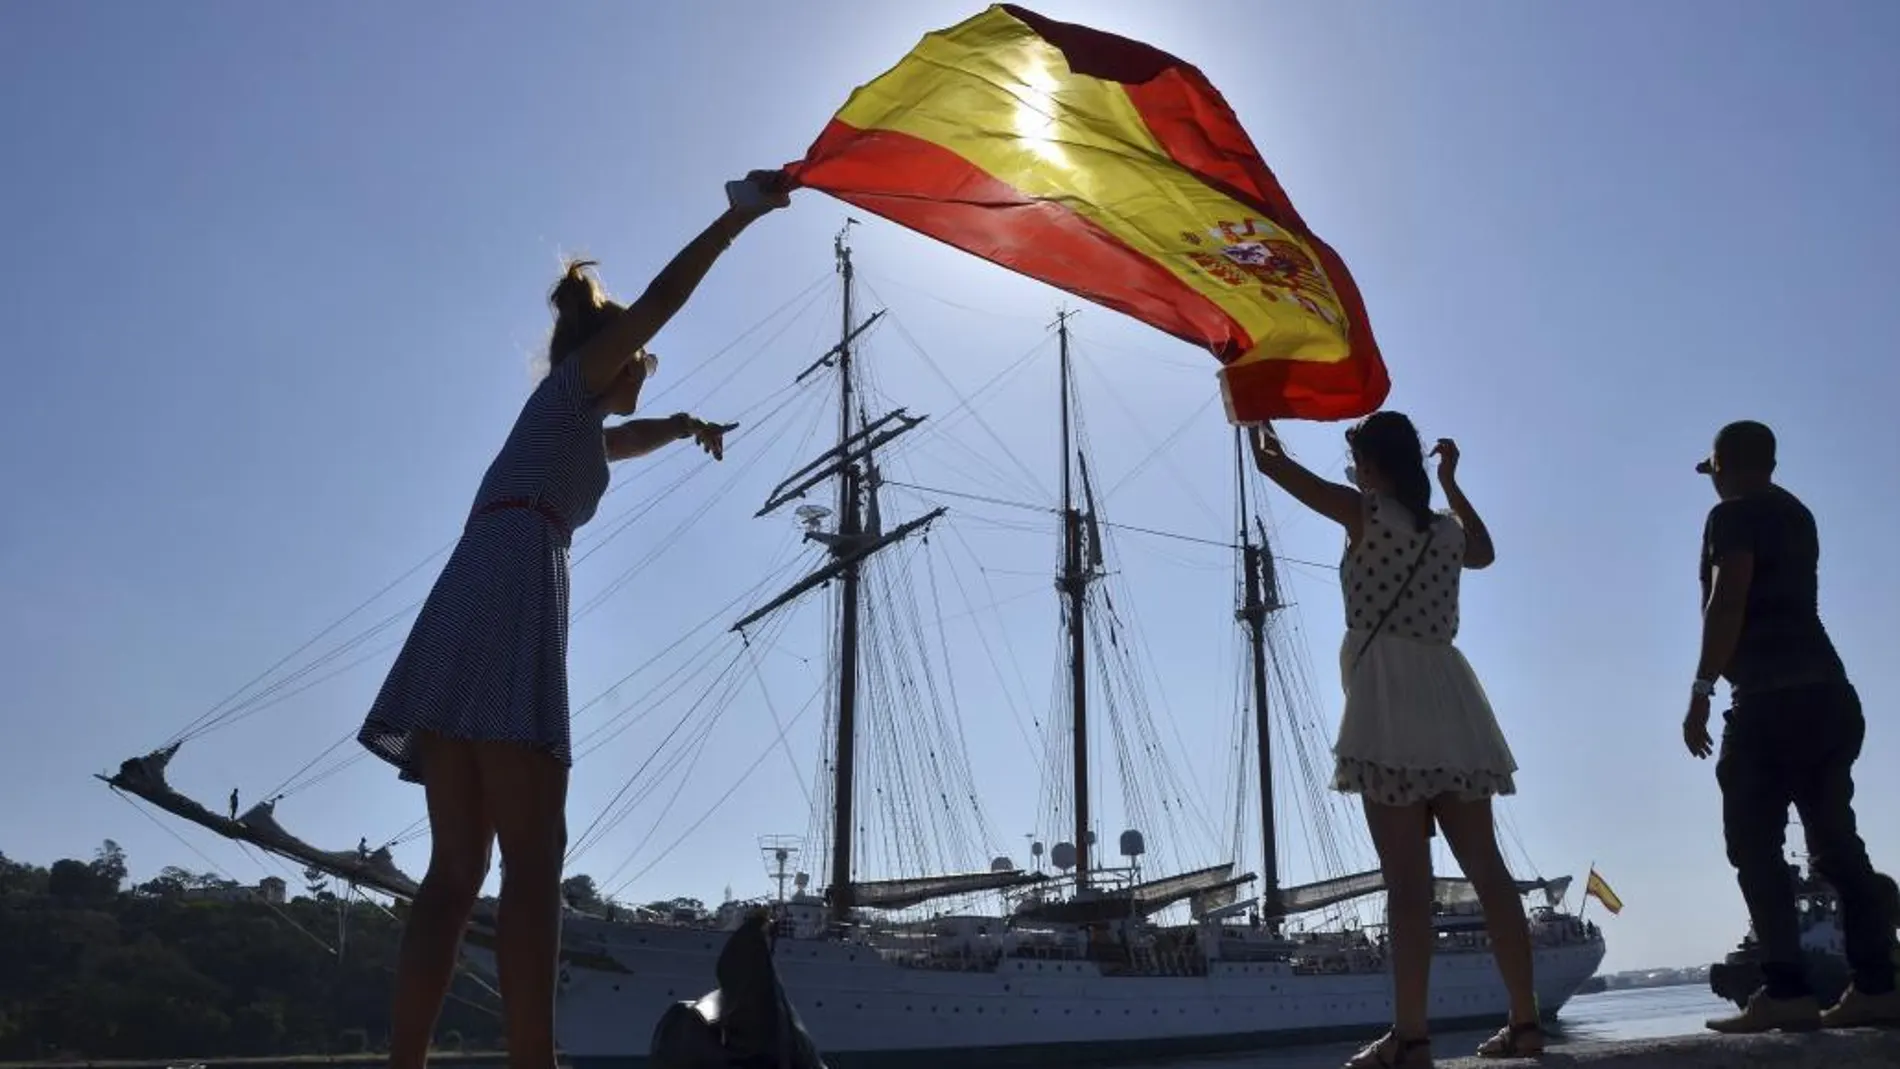 El buque escuela de la Armada española "Juan Sebastián Elcano"tras su estancia en Cuba